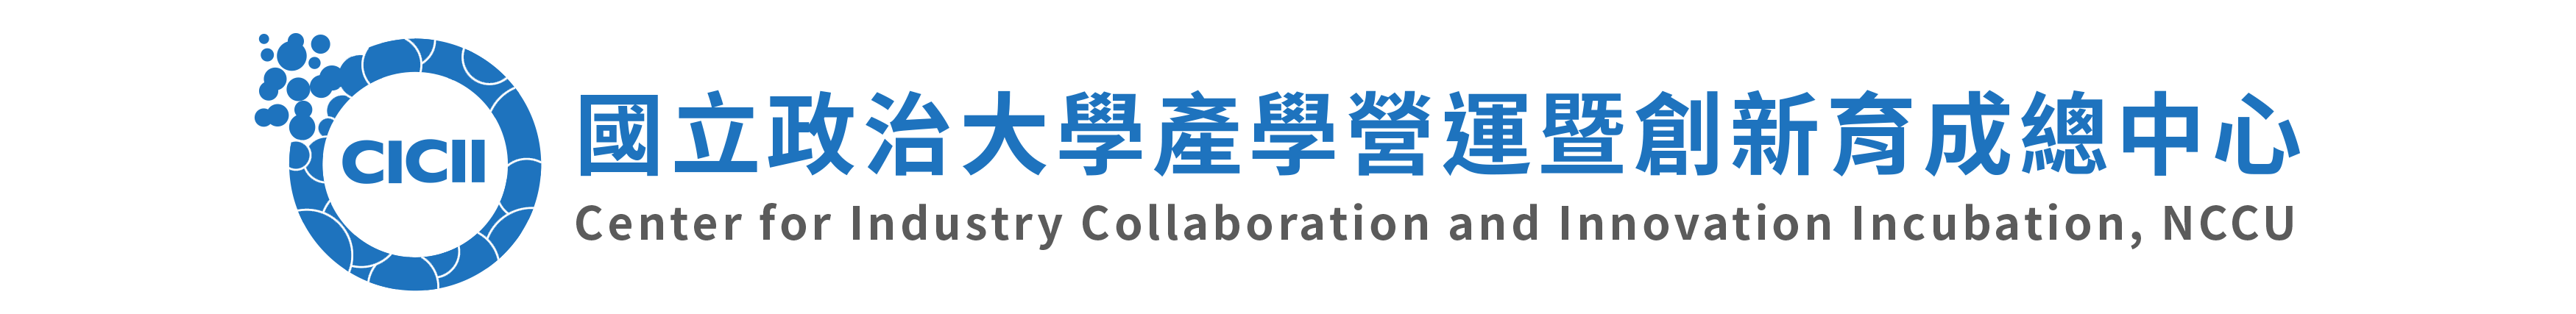 國立政治大學產學營運暨創新育成總中心 Logo